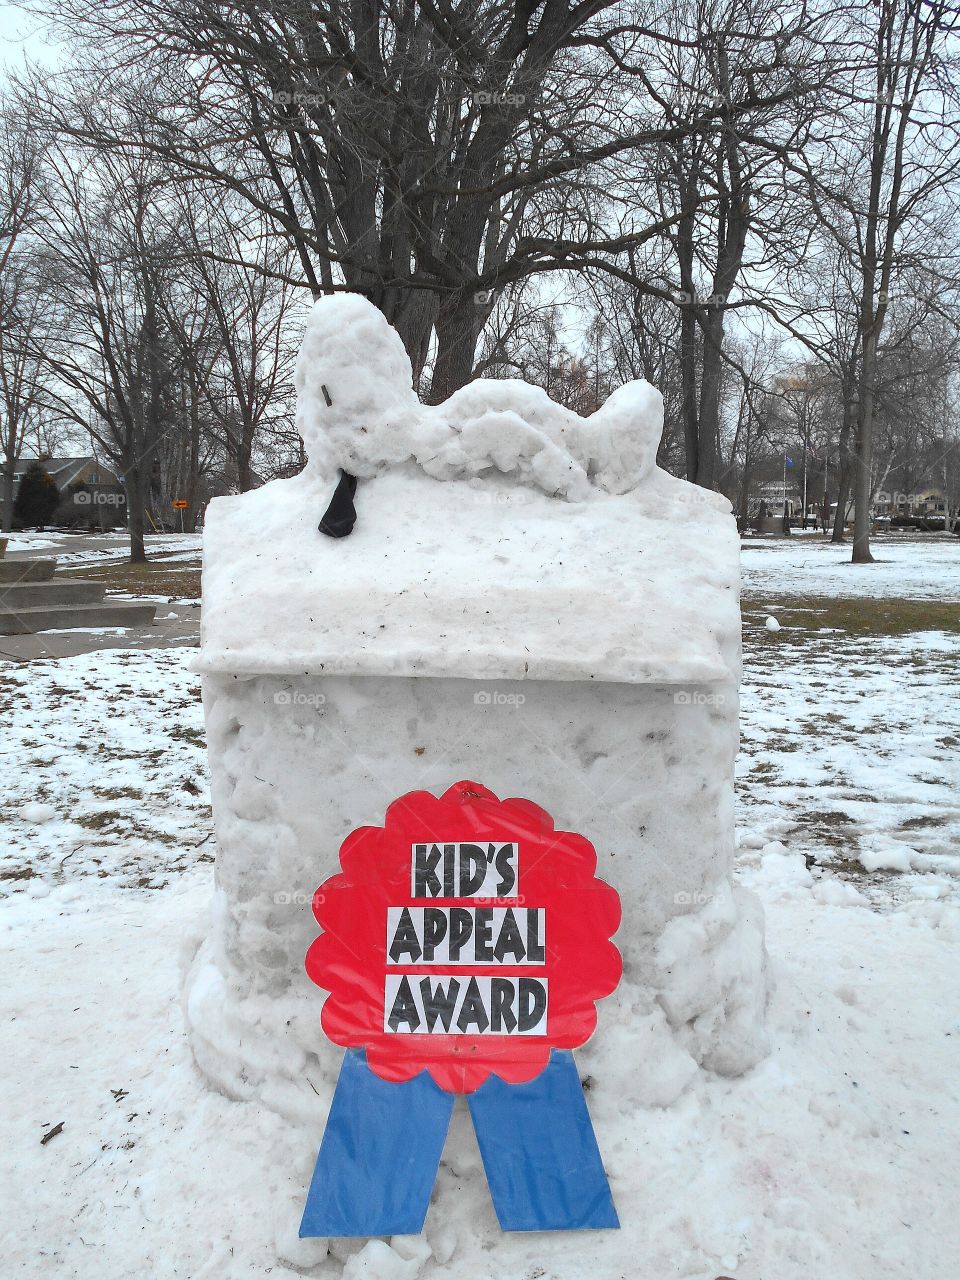 Award-winning Snow Sculpture